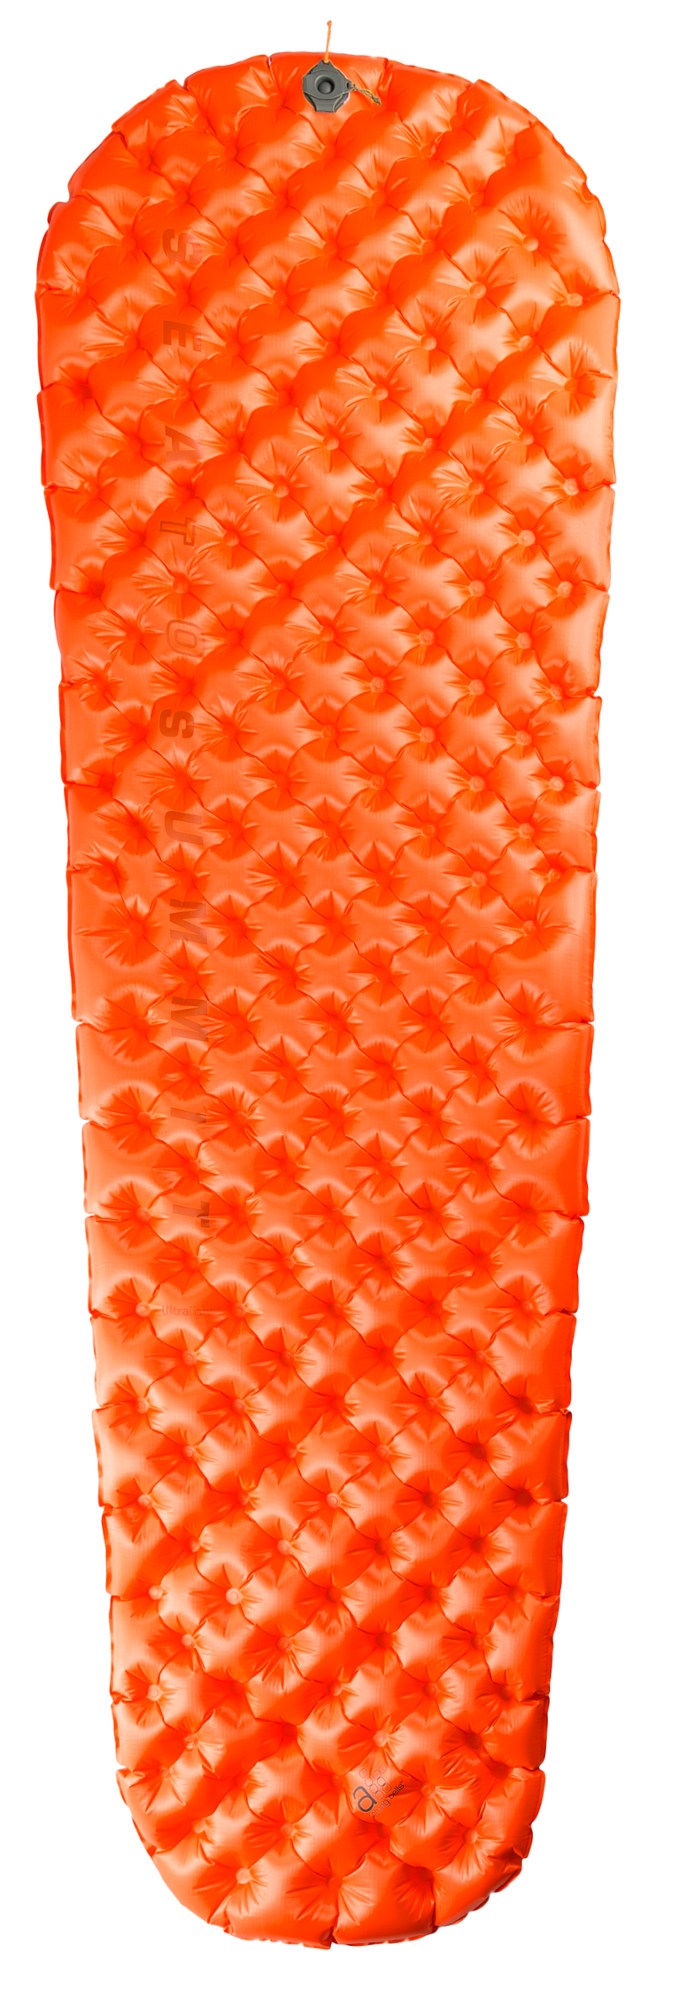 цена Сверхлегкий изолированный воздушный спальный коврик Sea to Summit, оранжевый